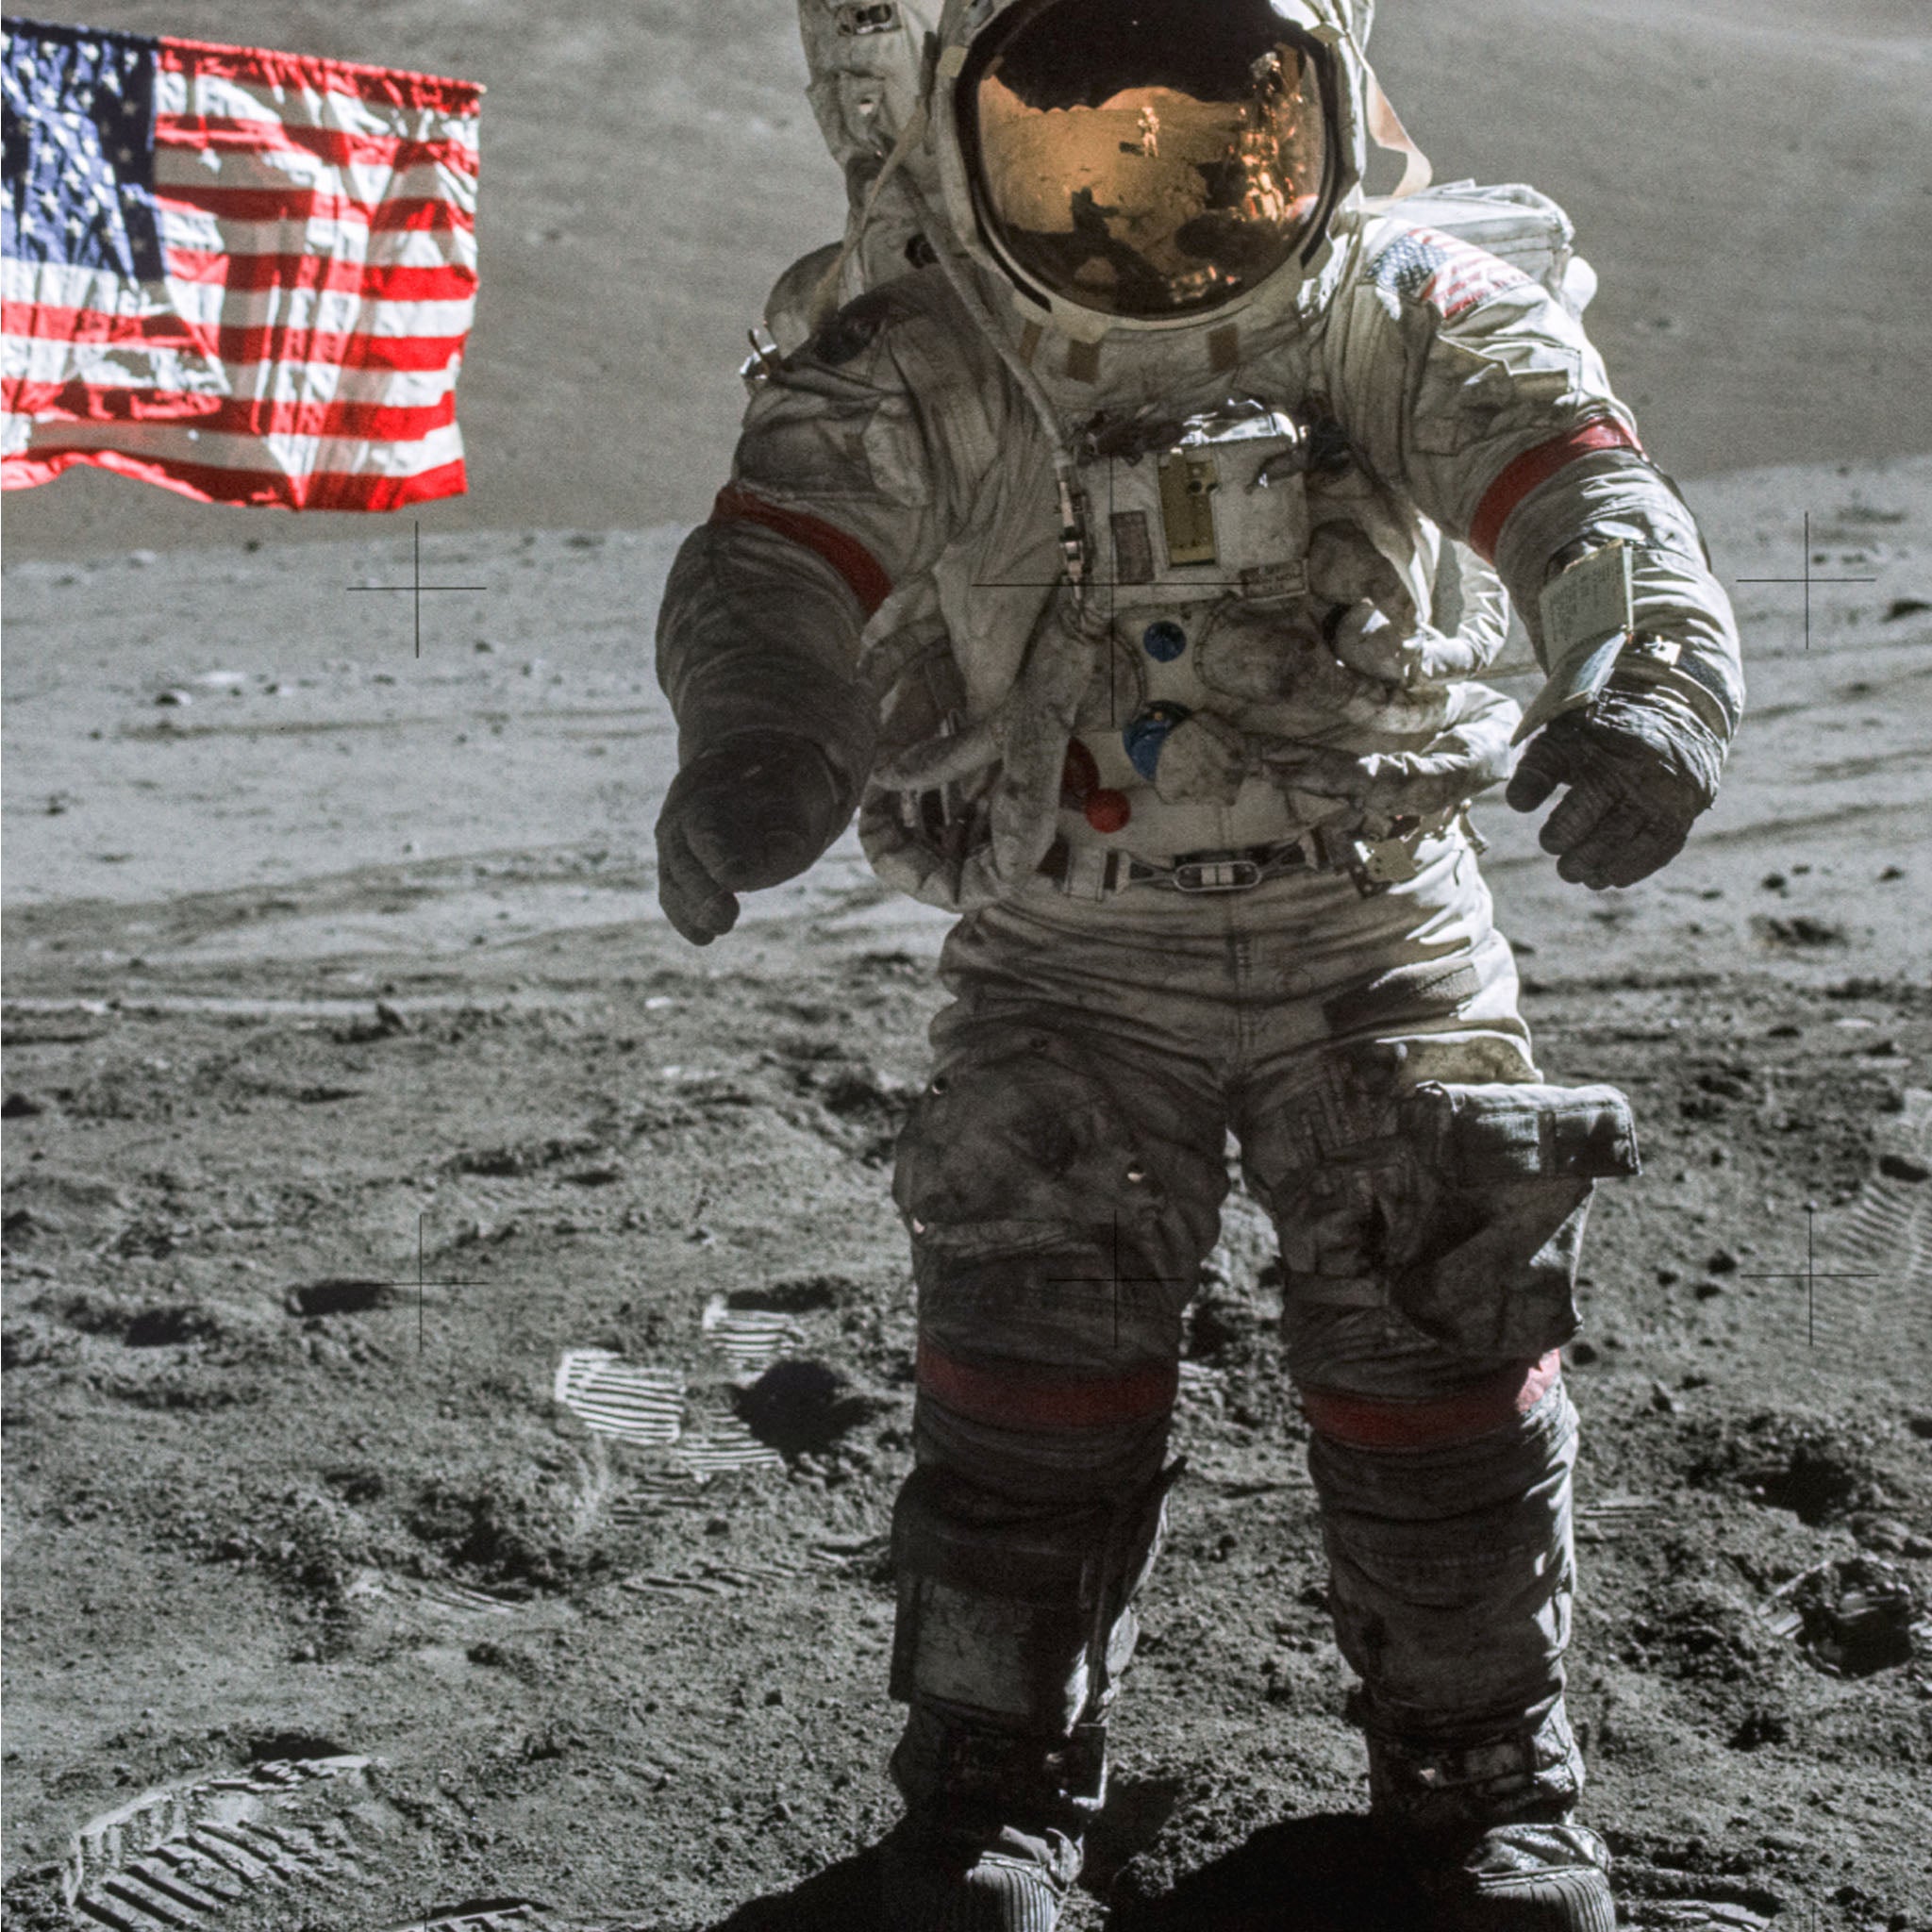 A Man on the Moon - Apollo 17